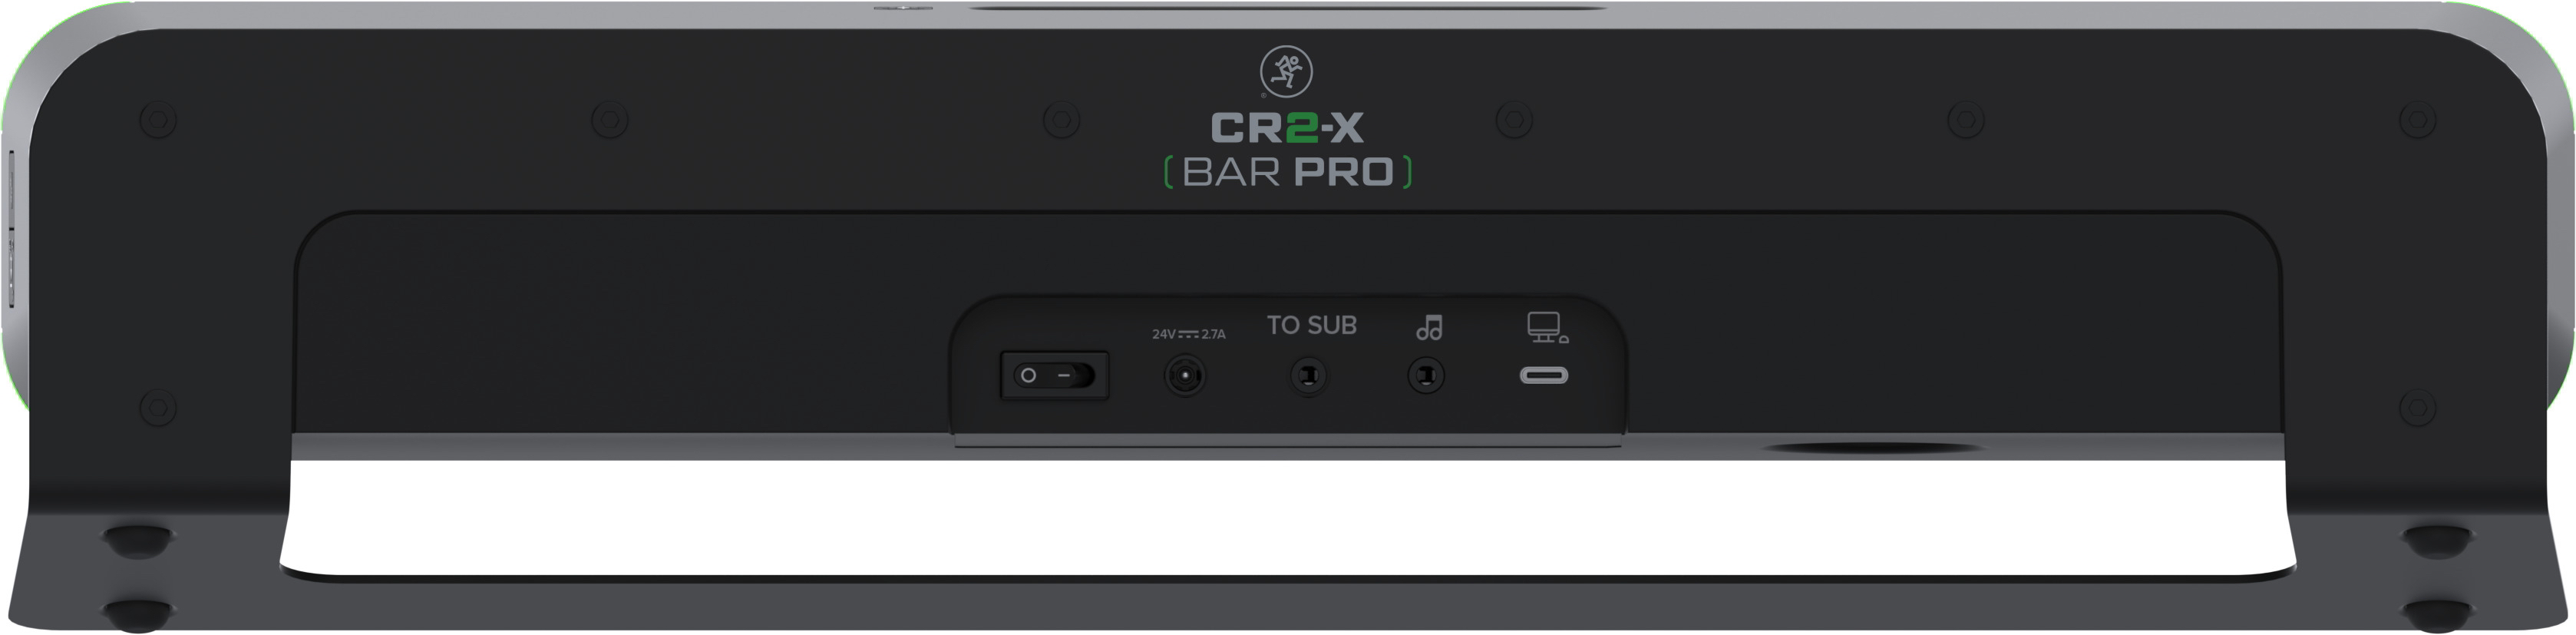 CR2-X Bar Proパネル画像